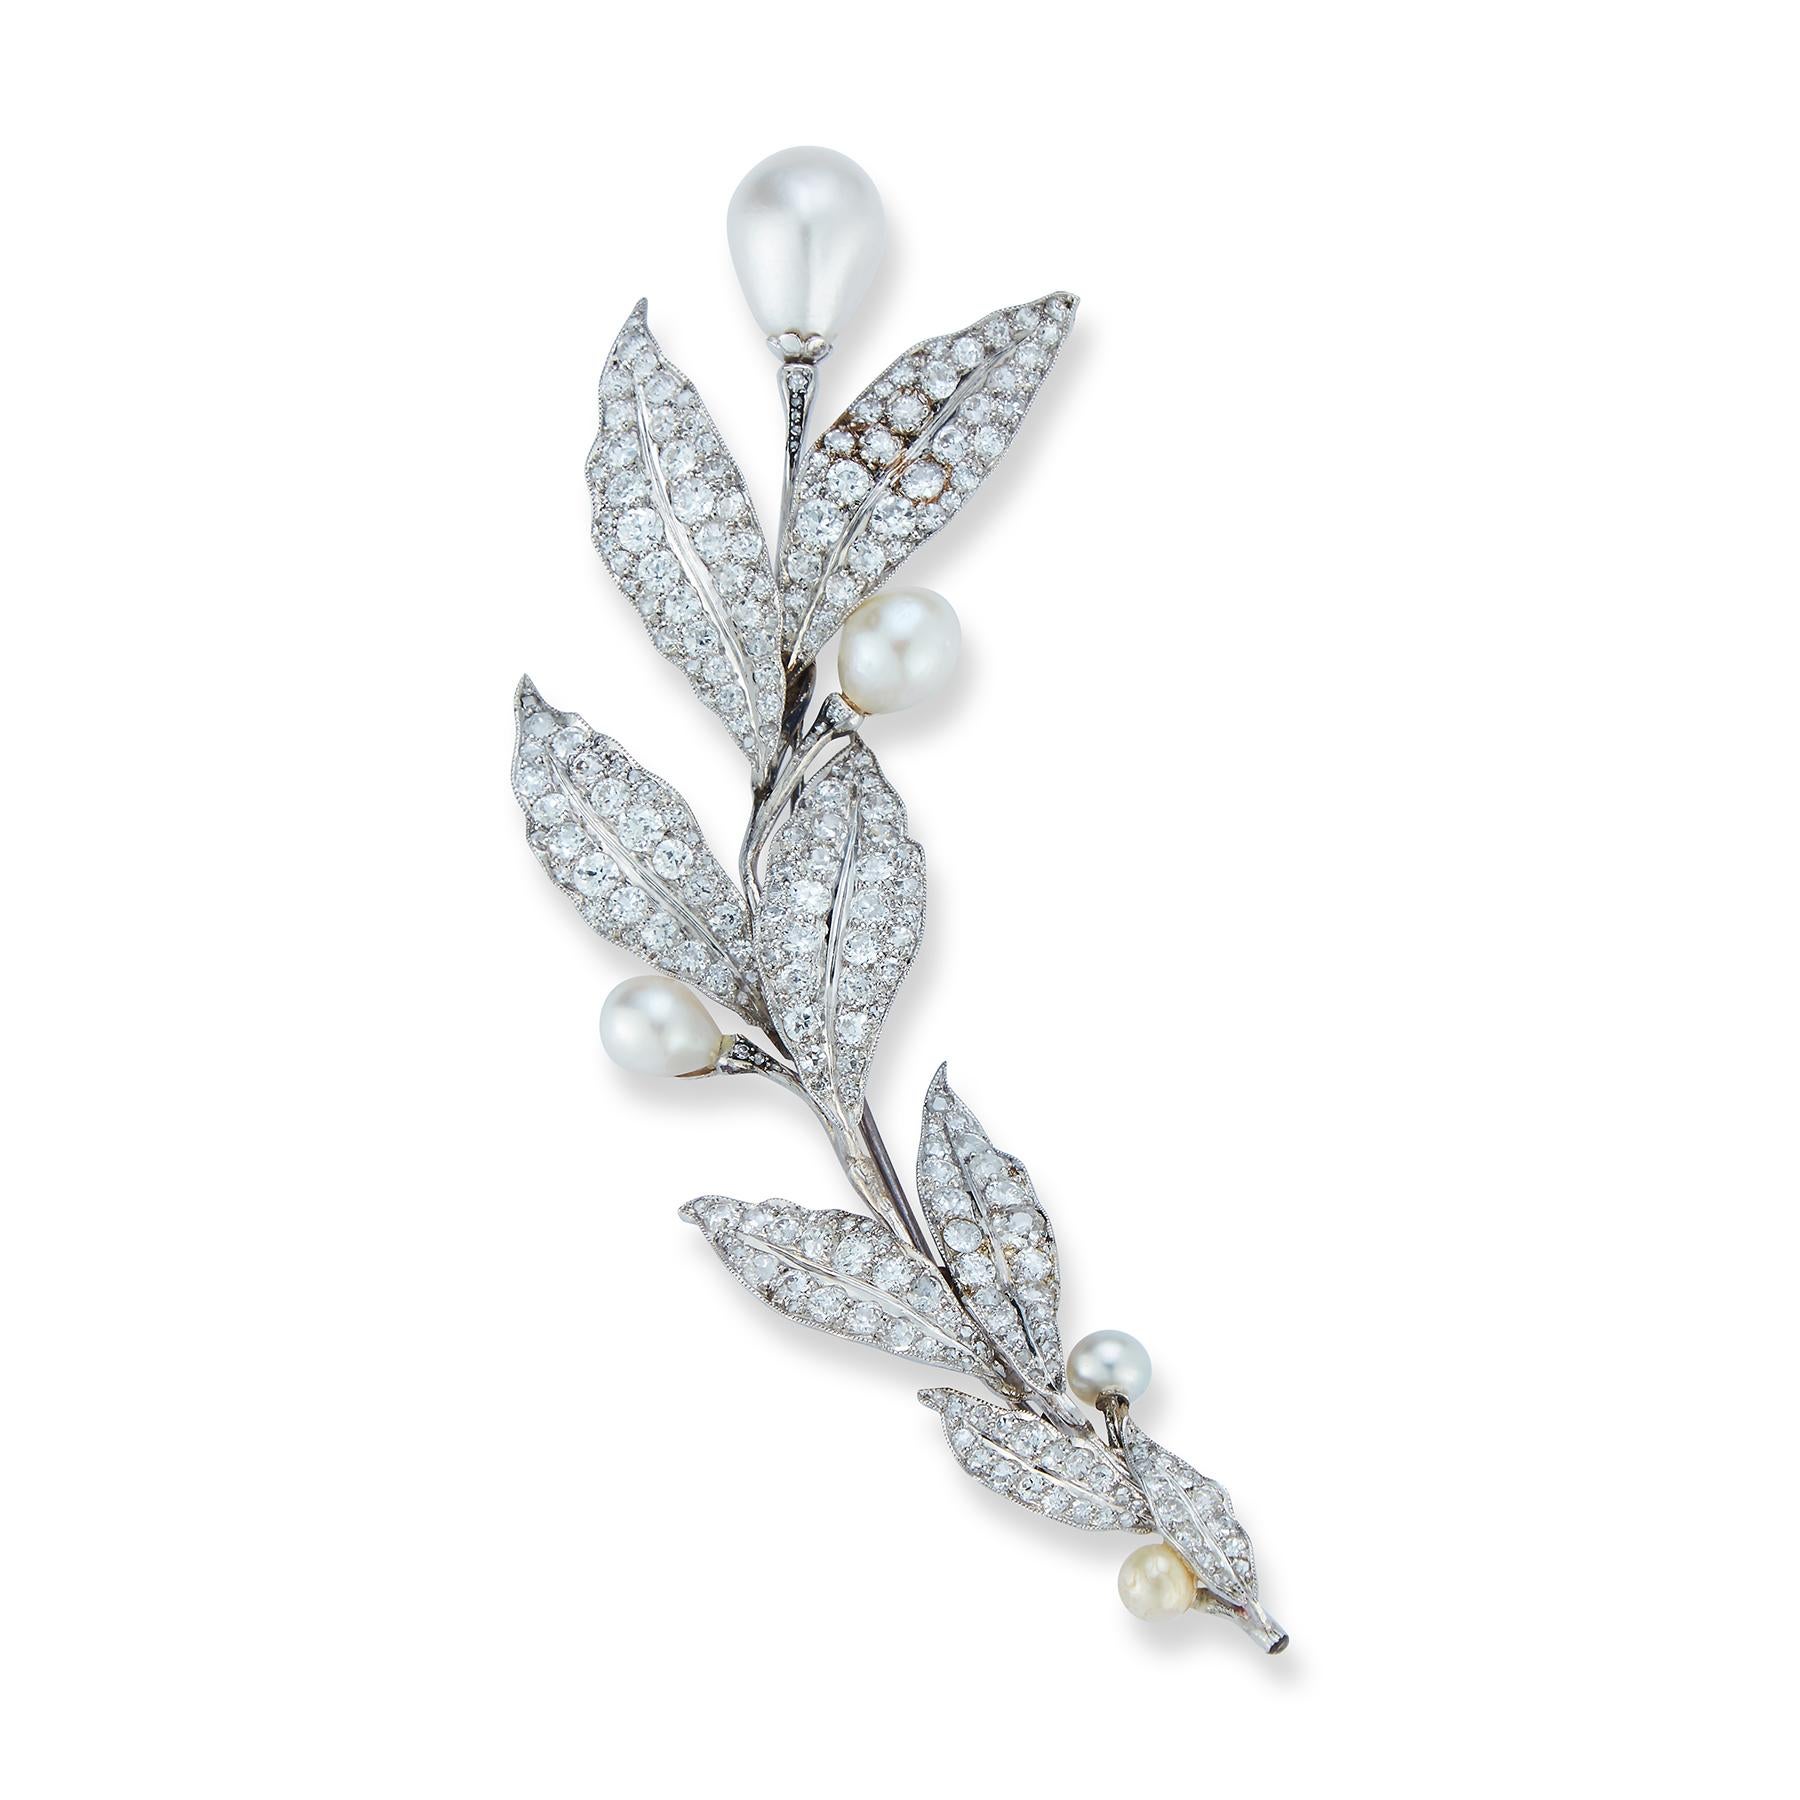 Belle Époque Natürliche Perle und Diamant Blume Brosche oder Haarteil

4 zertifizierte Naturperlen mit Diamantblättern in Platin gefasst
1 Kunstperle

Abmessungen: 4